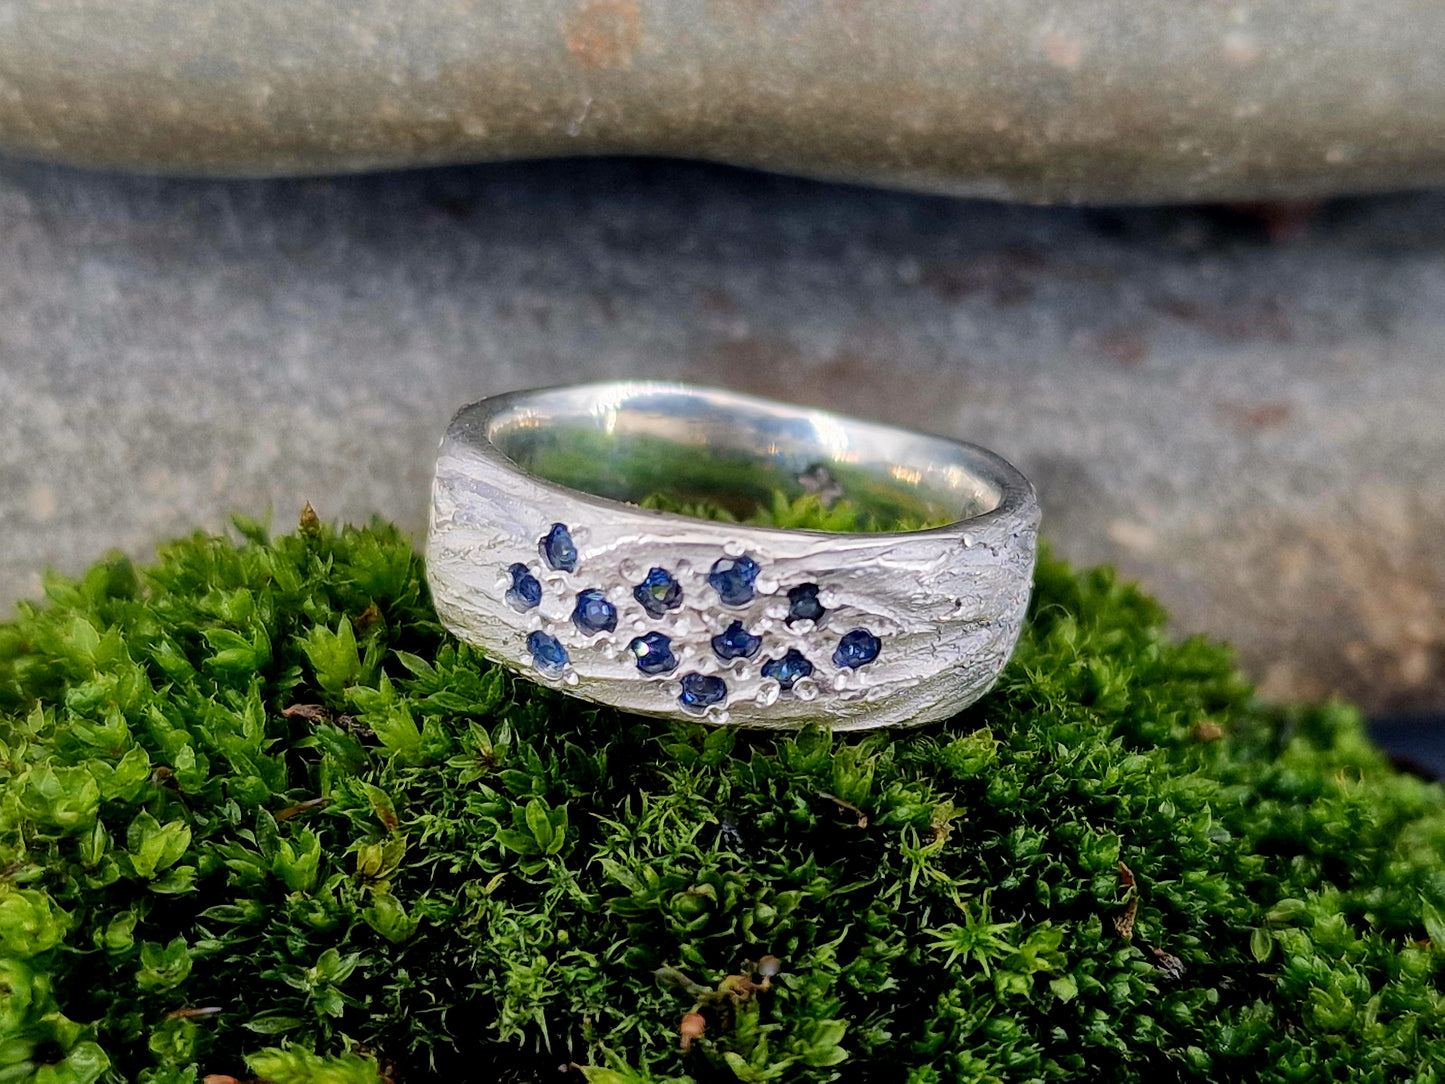 LeoLars-PABE Saphir Design Ring, Gr. 57 (18), aus 925er Silber mit Baumrinde als Oberflächen Struktur, massiv, blaue Saphire, Unikat, Handarbeit